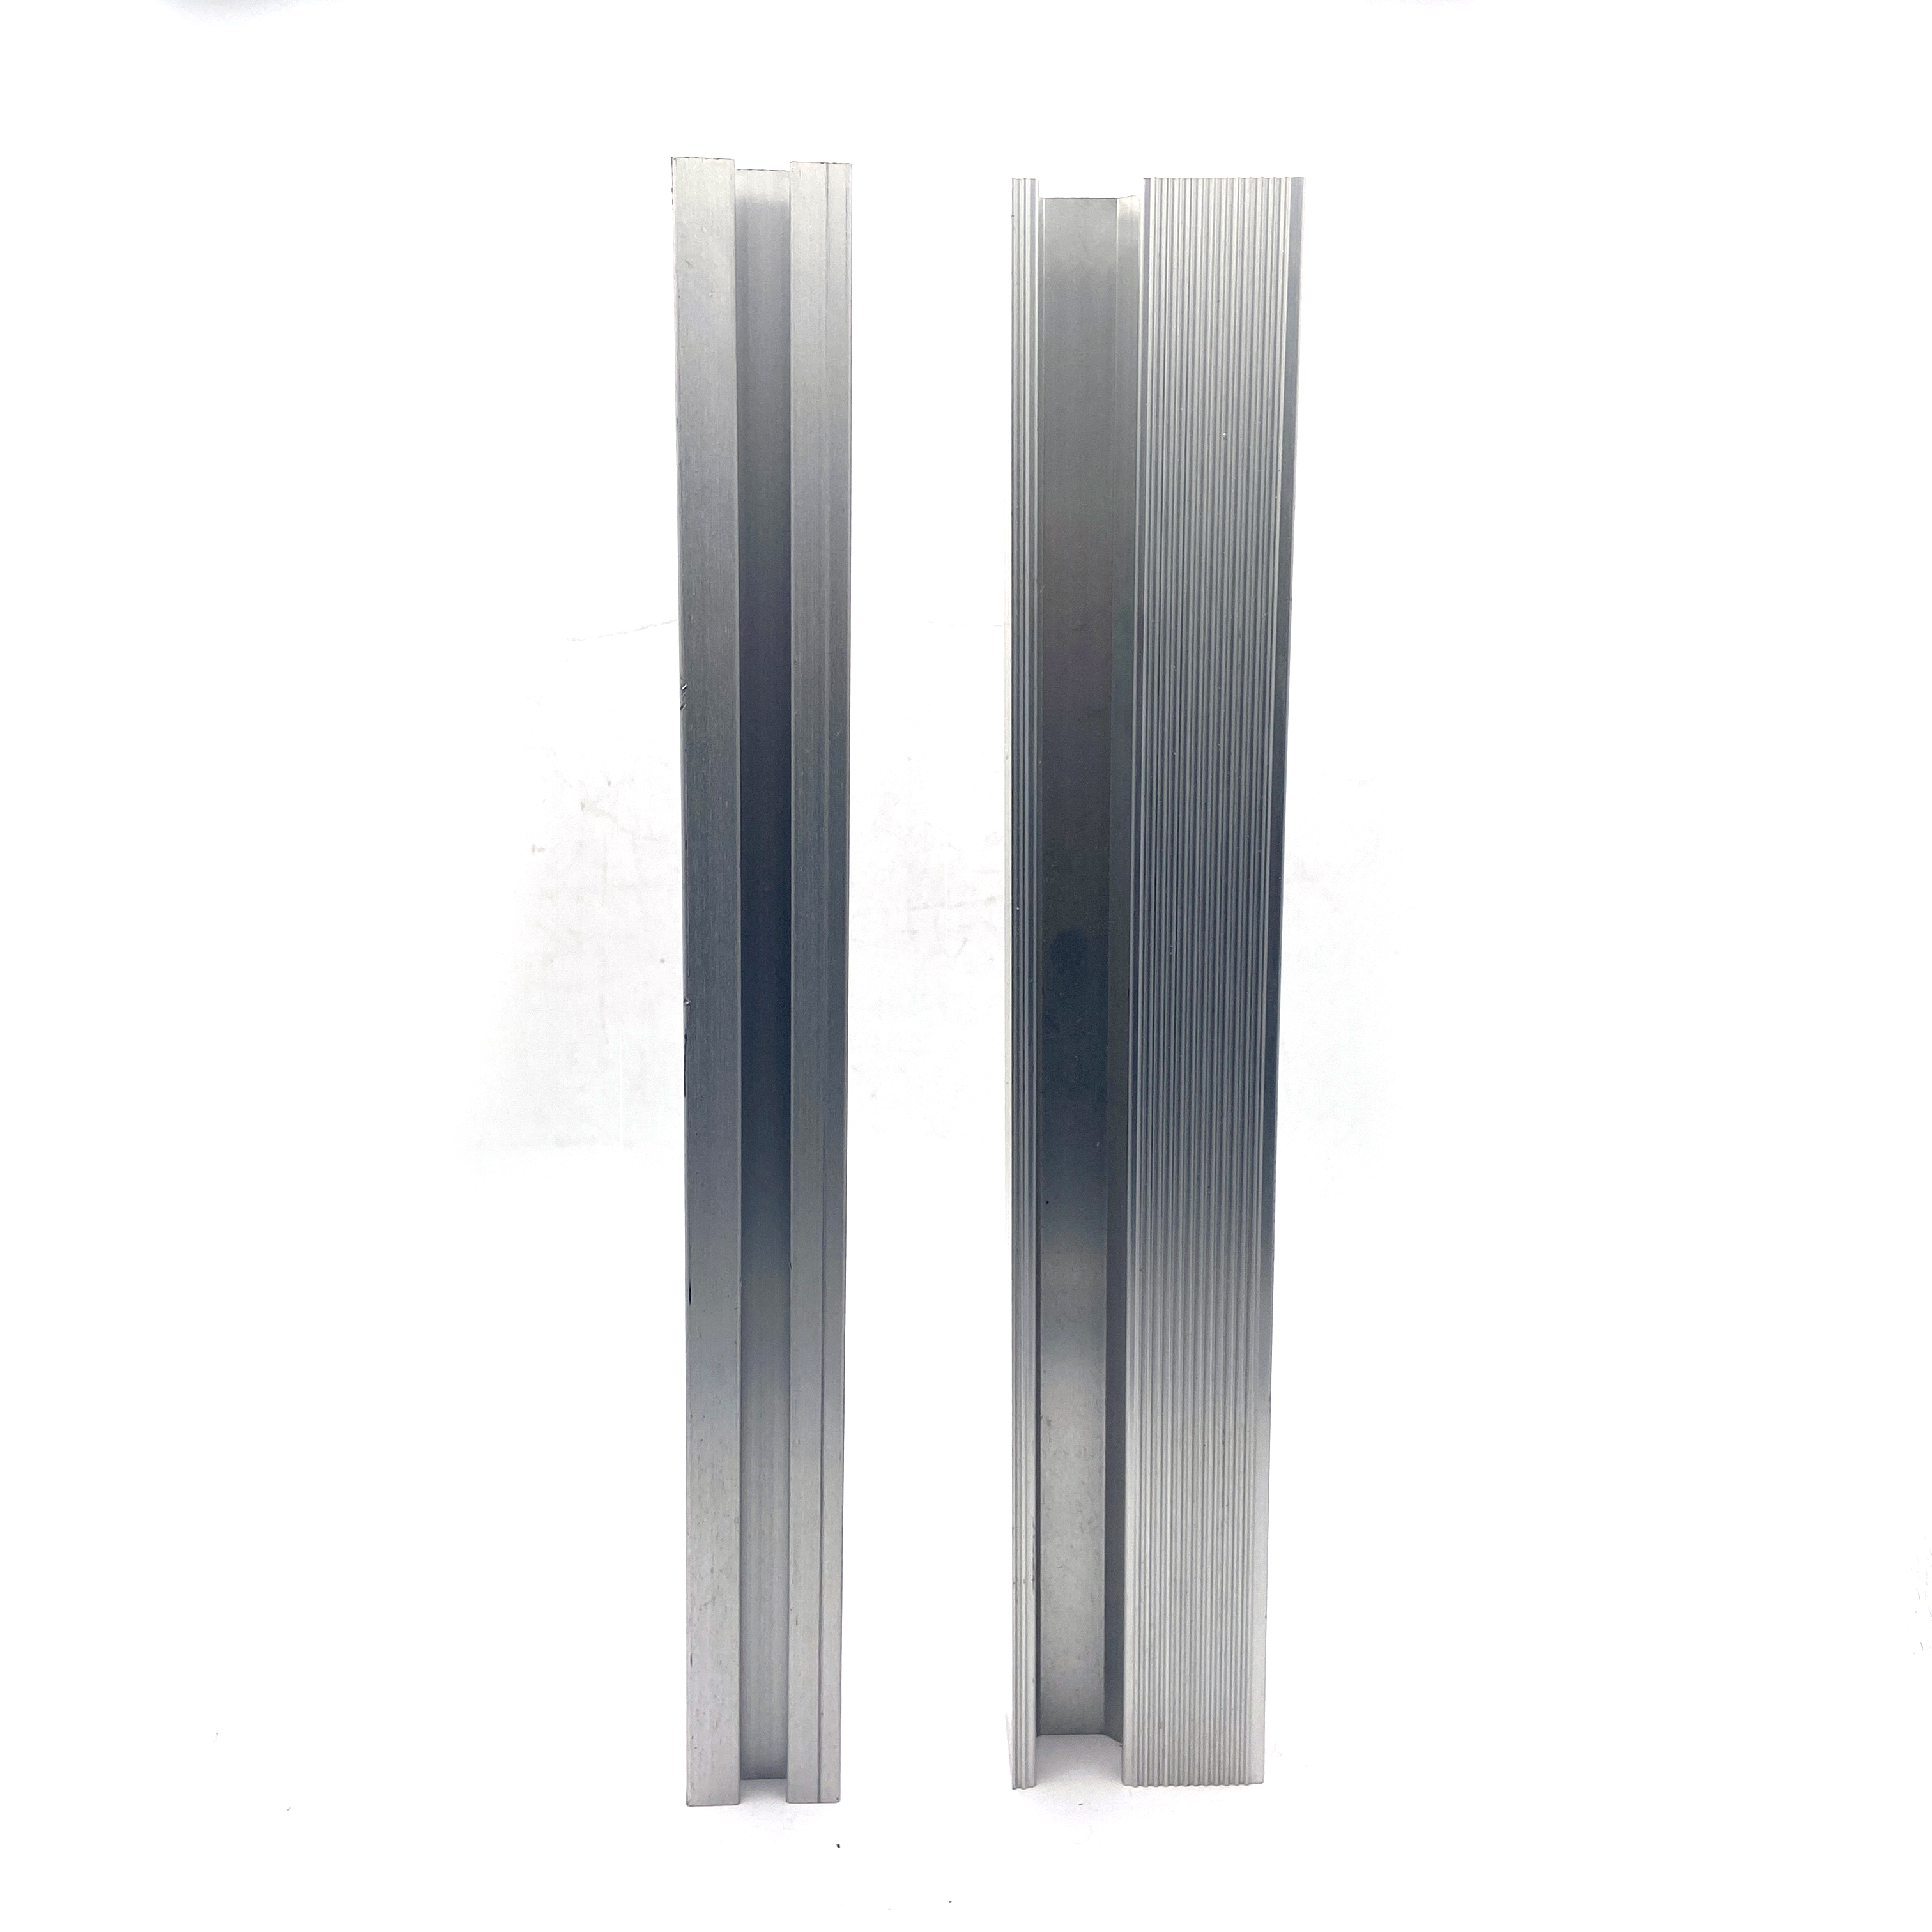 60 Series T-Slot Solar System Aluminium Construction Profiles Aluminium Extrusion Profile Bracket